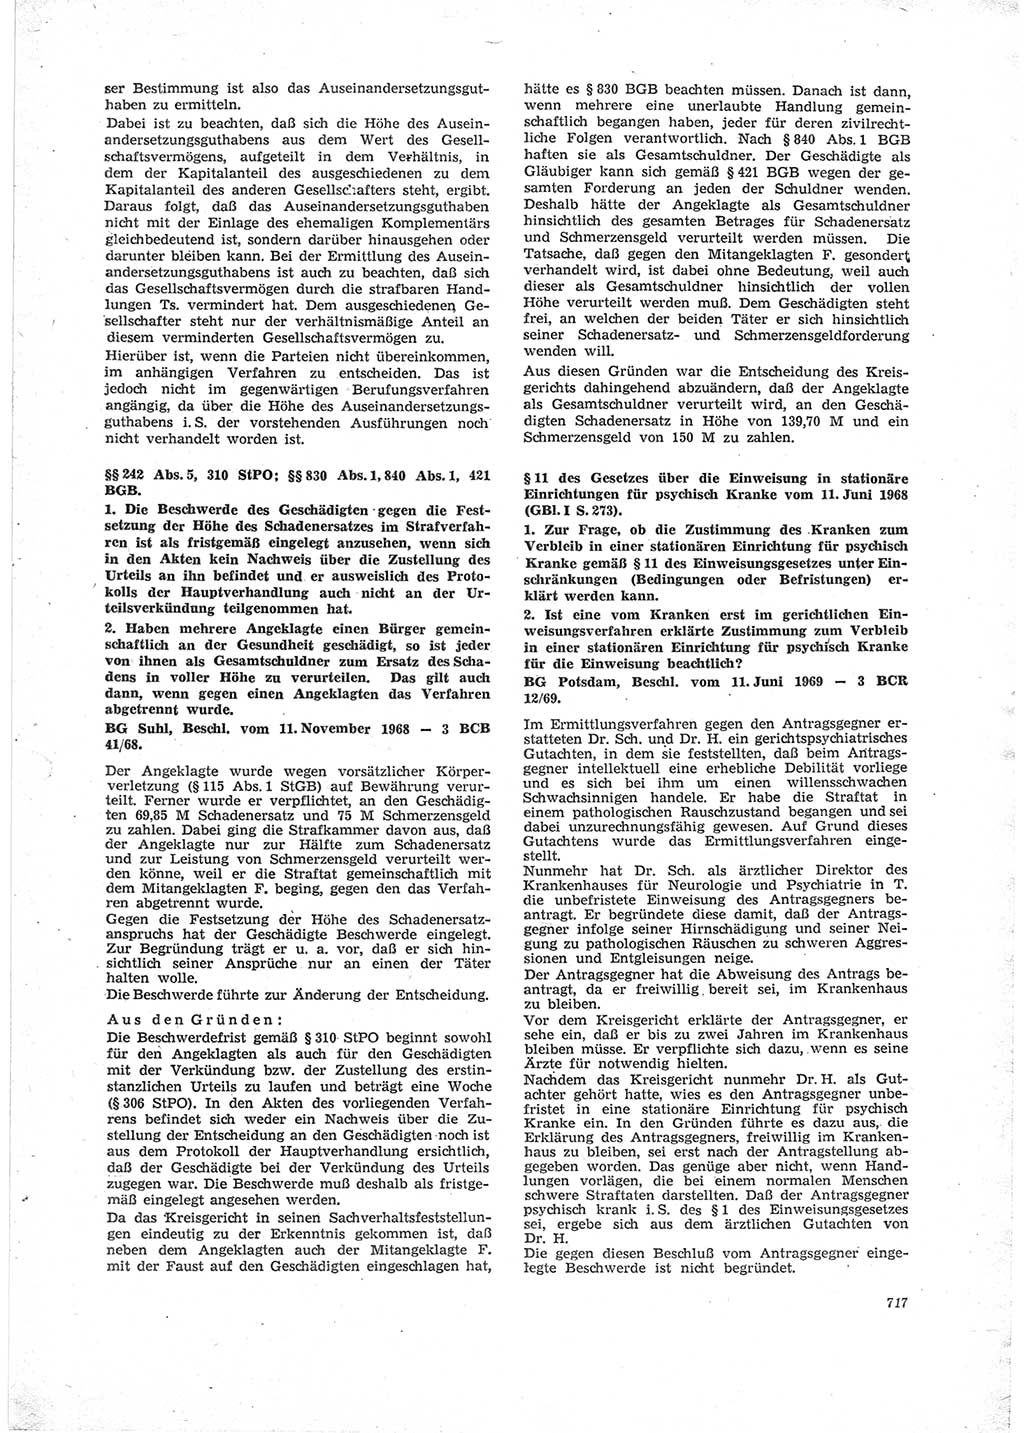 Neue Justiz (NJ), Zeitschrift für Recht und Rechtswissenschaft [Deutsche Demokratische Republik (DDR)], 23. Jahrgang 1969, Seite 717 (NJ DDR 1969, S. 717)